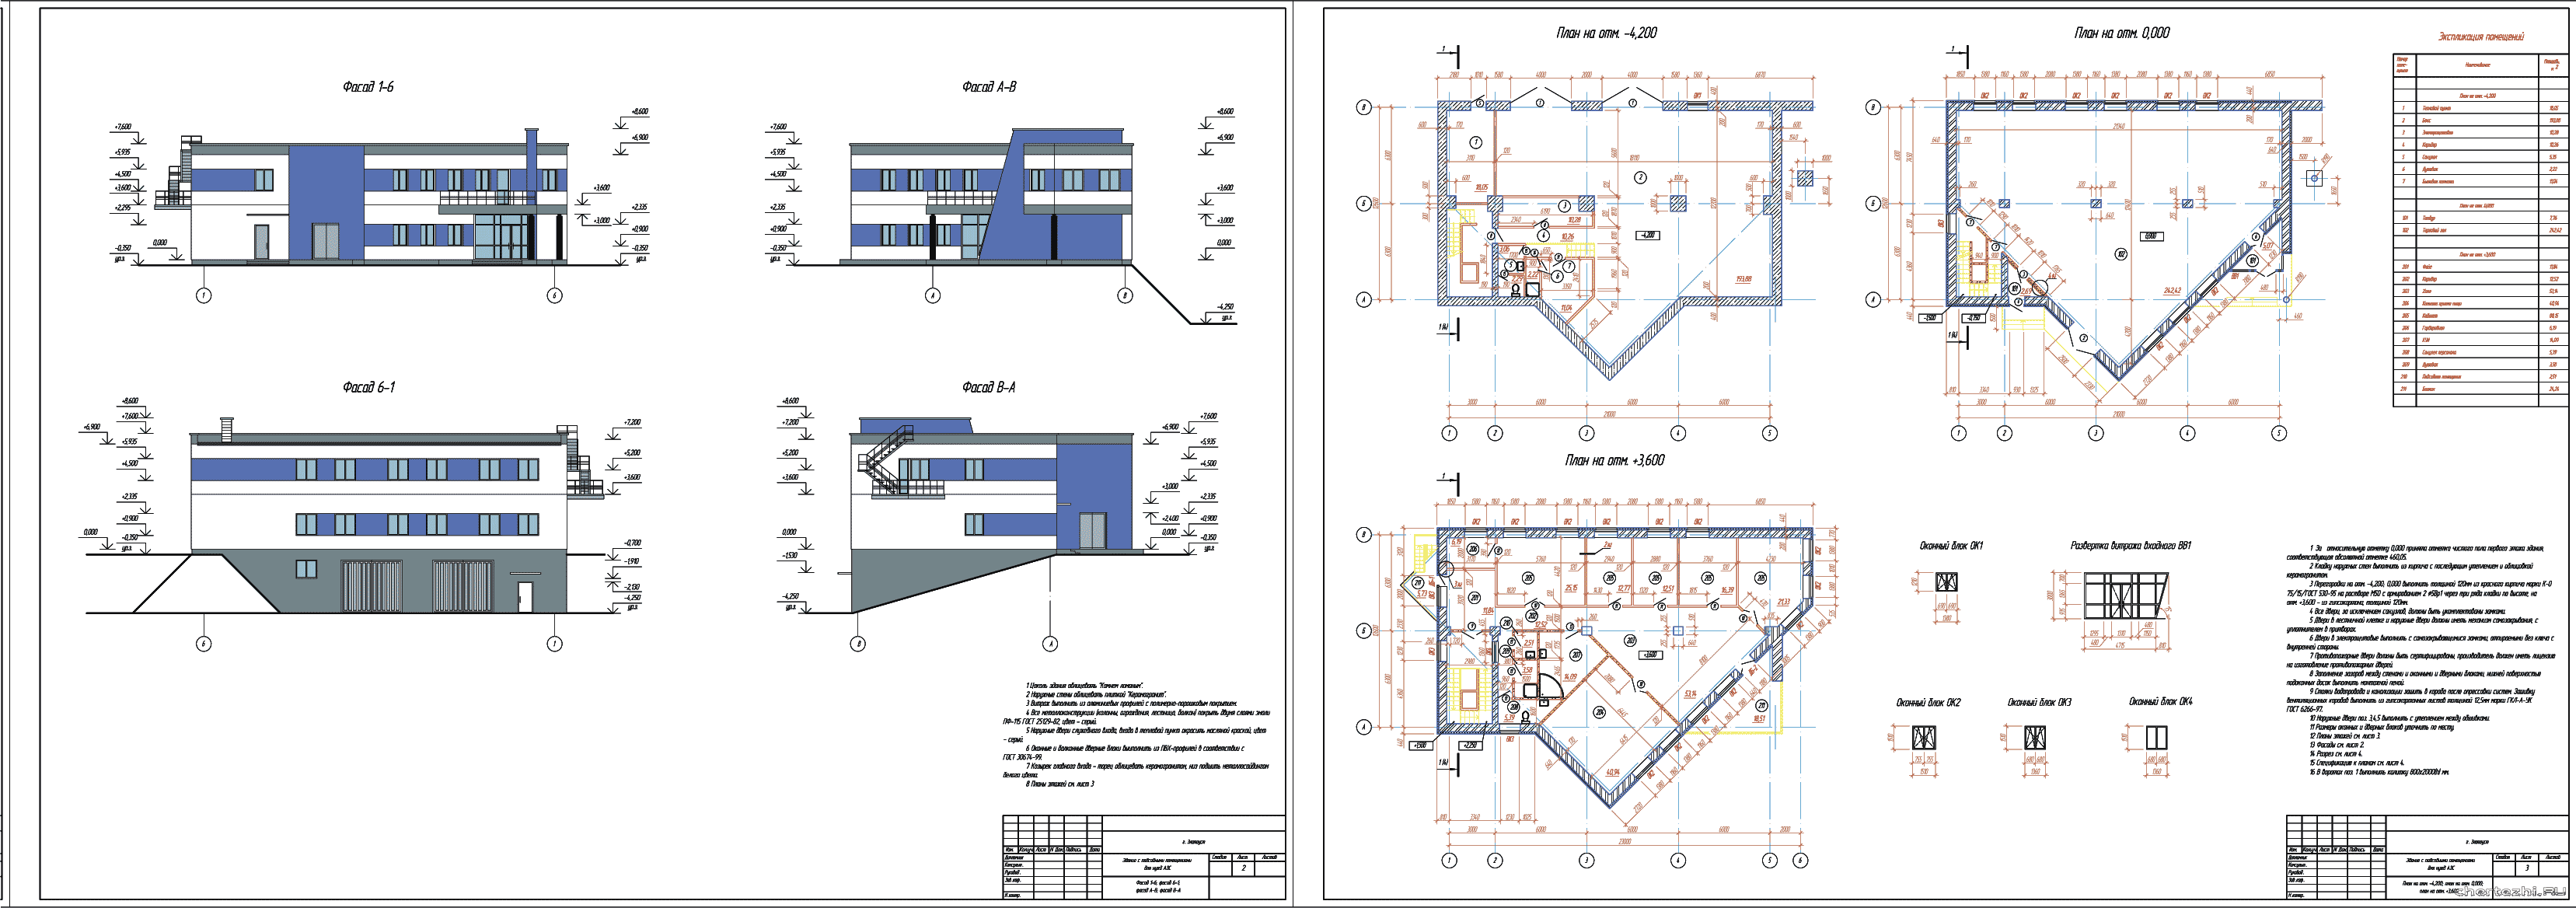 Дипломный проект - Здание для нужд АЗС с подсобными помещениями 21,0 х 12,6 м в г. Златоуст